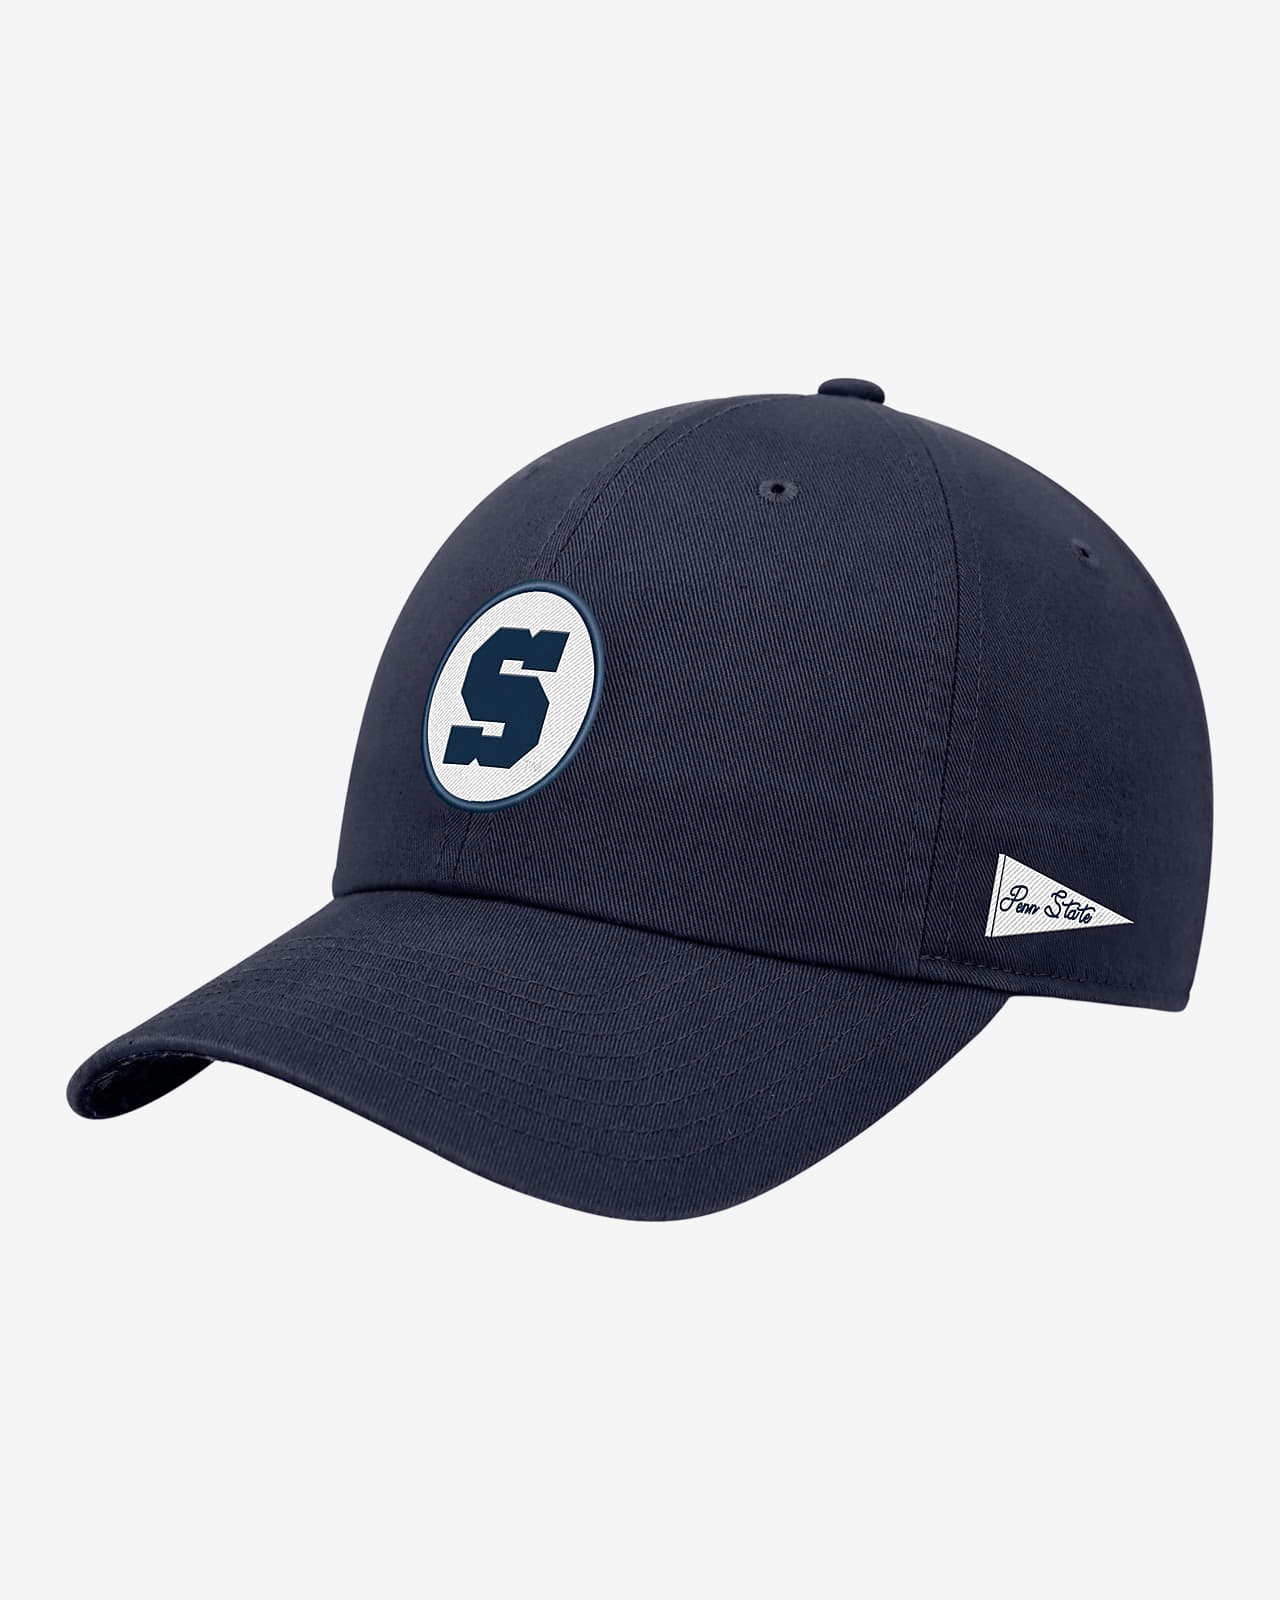 Gorra universitaria ajustable Nike con logotipo de Penn State